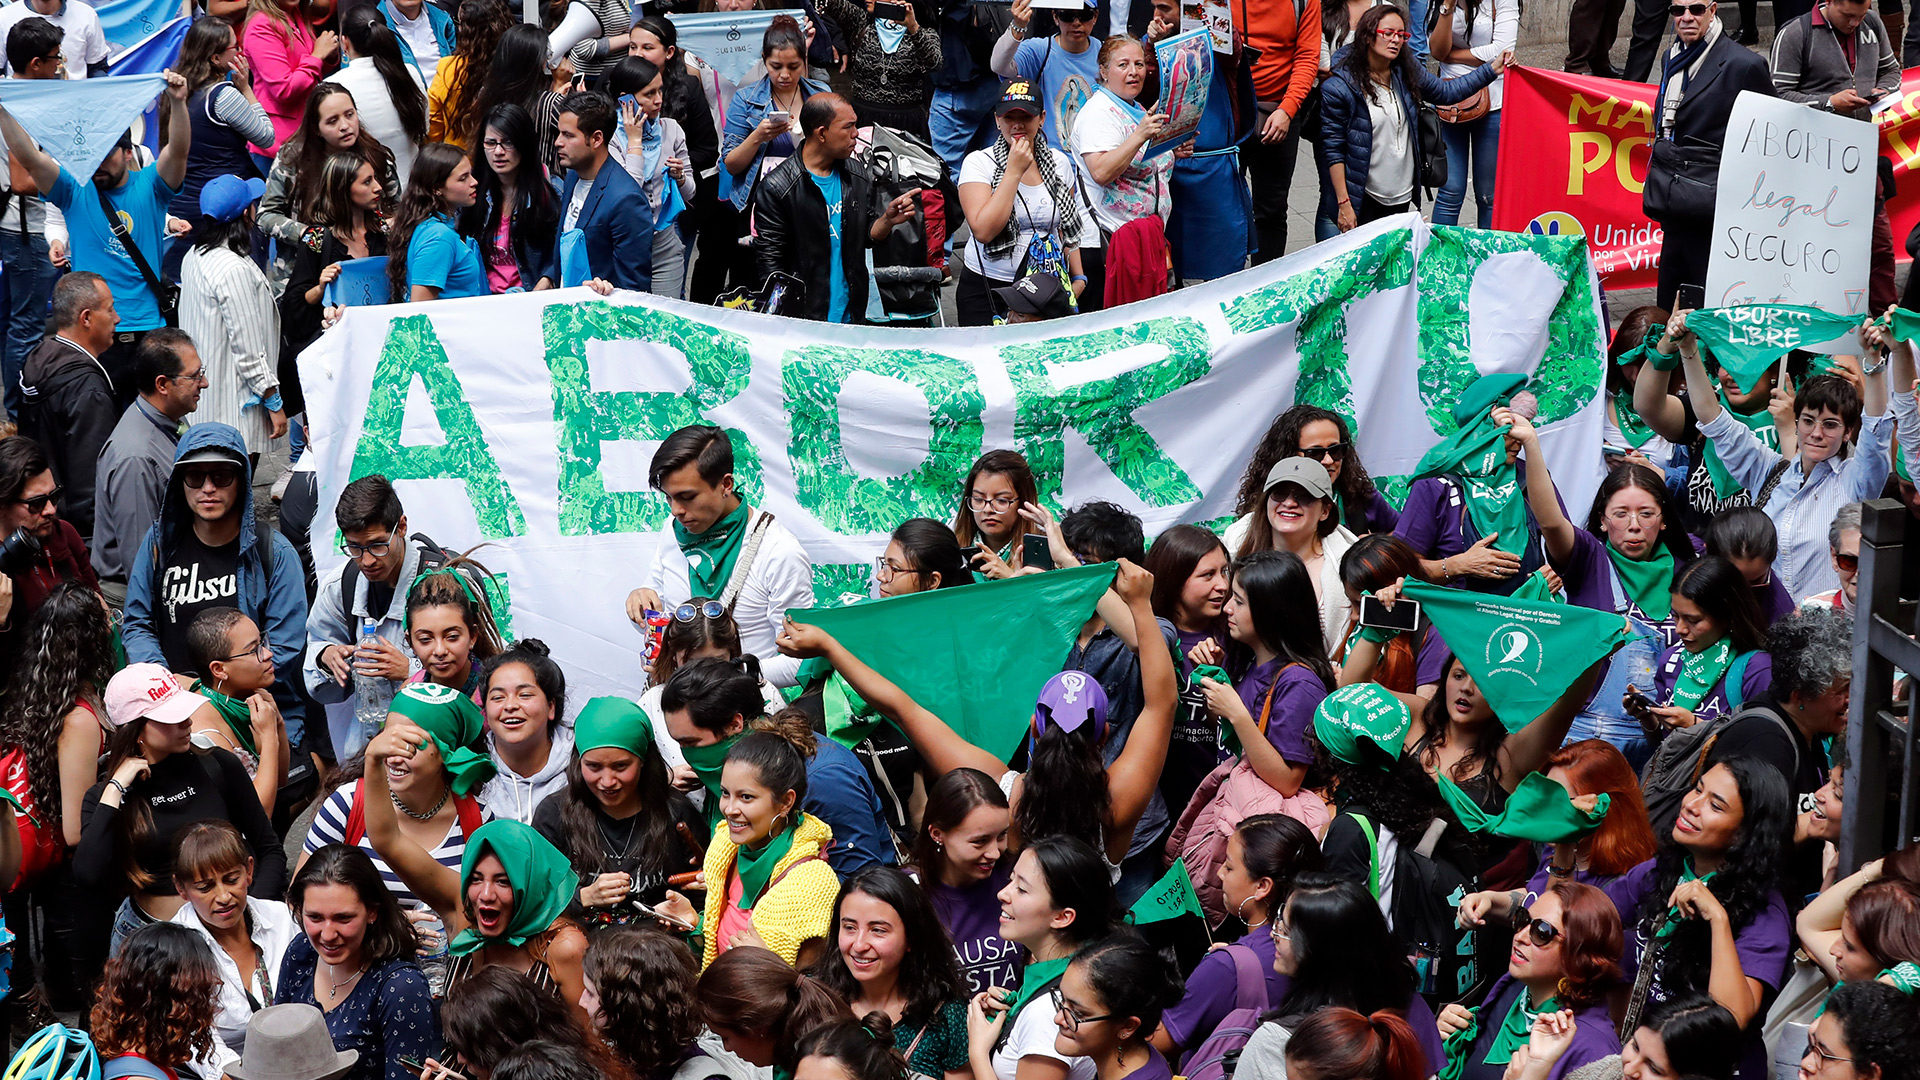 AME115. BOGOTÁ (COLOMBIA), 02/03/2020.- Personas a favor del aborto legal (abajo) se manifiestan este lunes frente a quienes están en contra (arriba), junto a la sede de la Corte Constitucional, que discute su despenalización total en Bogotá (Colombia). EFE/Mauricio Dueñas Castañeda